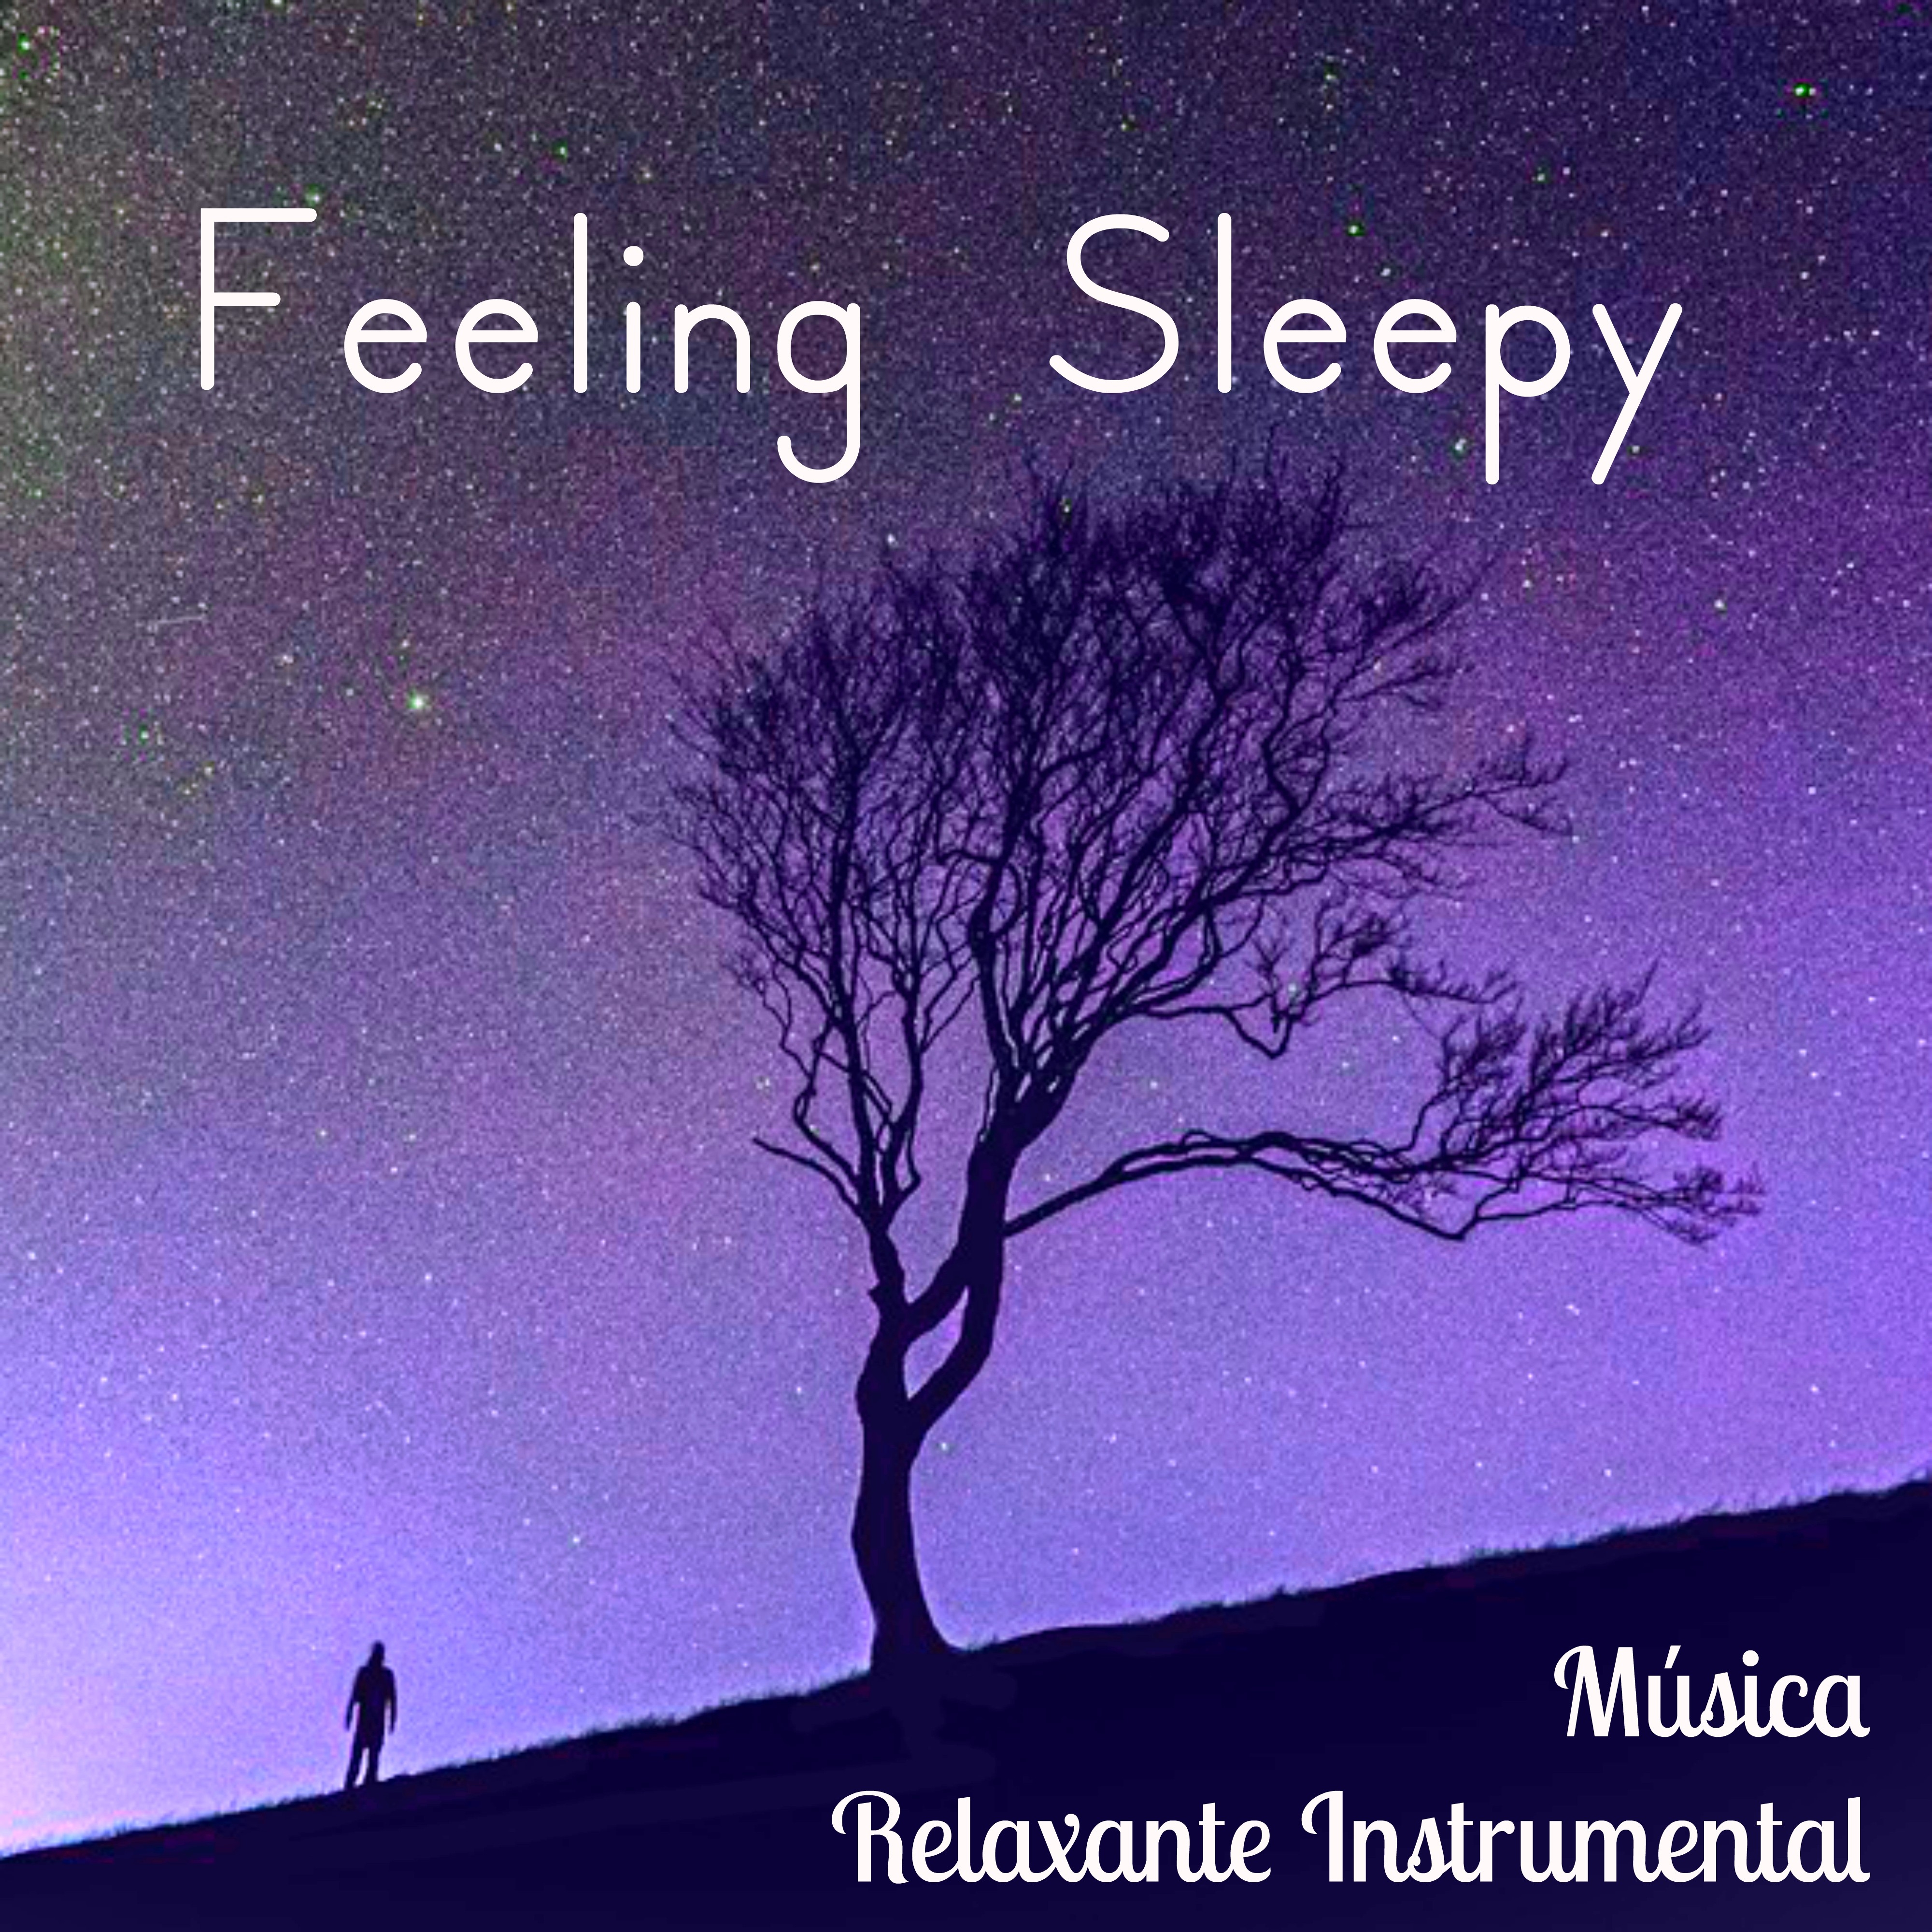 Best Sleep Song - Soothing Sleeping Music